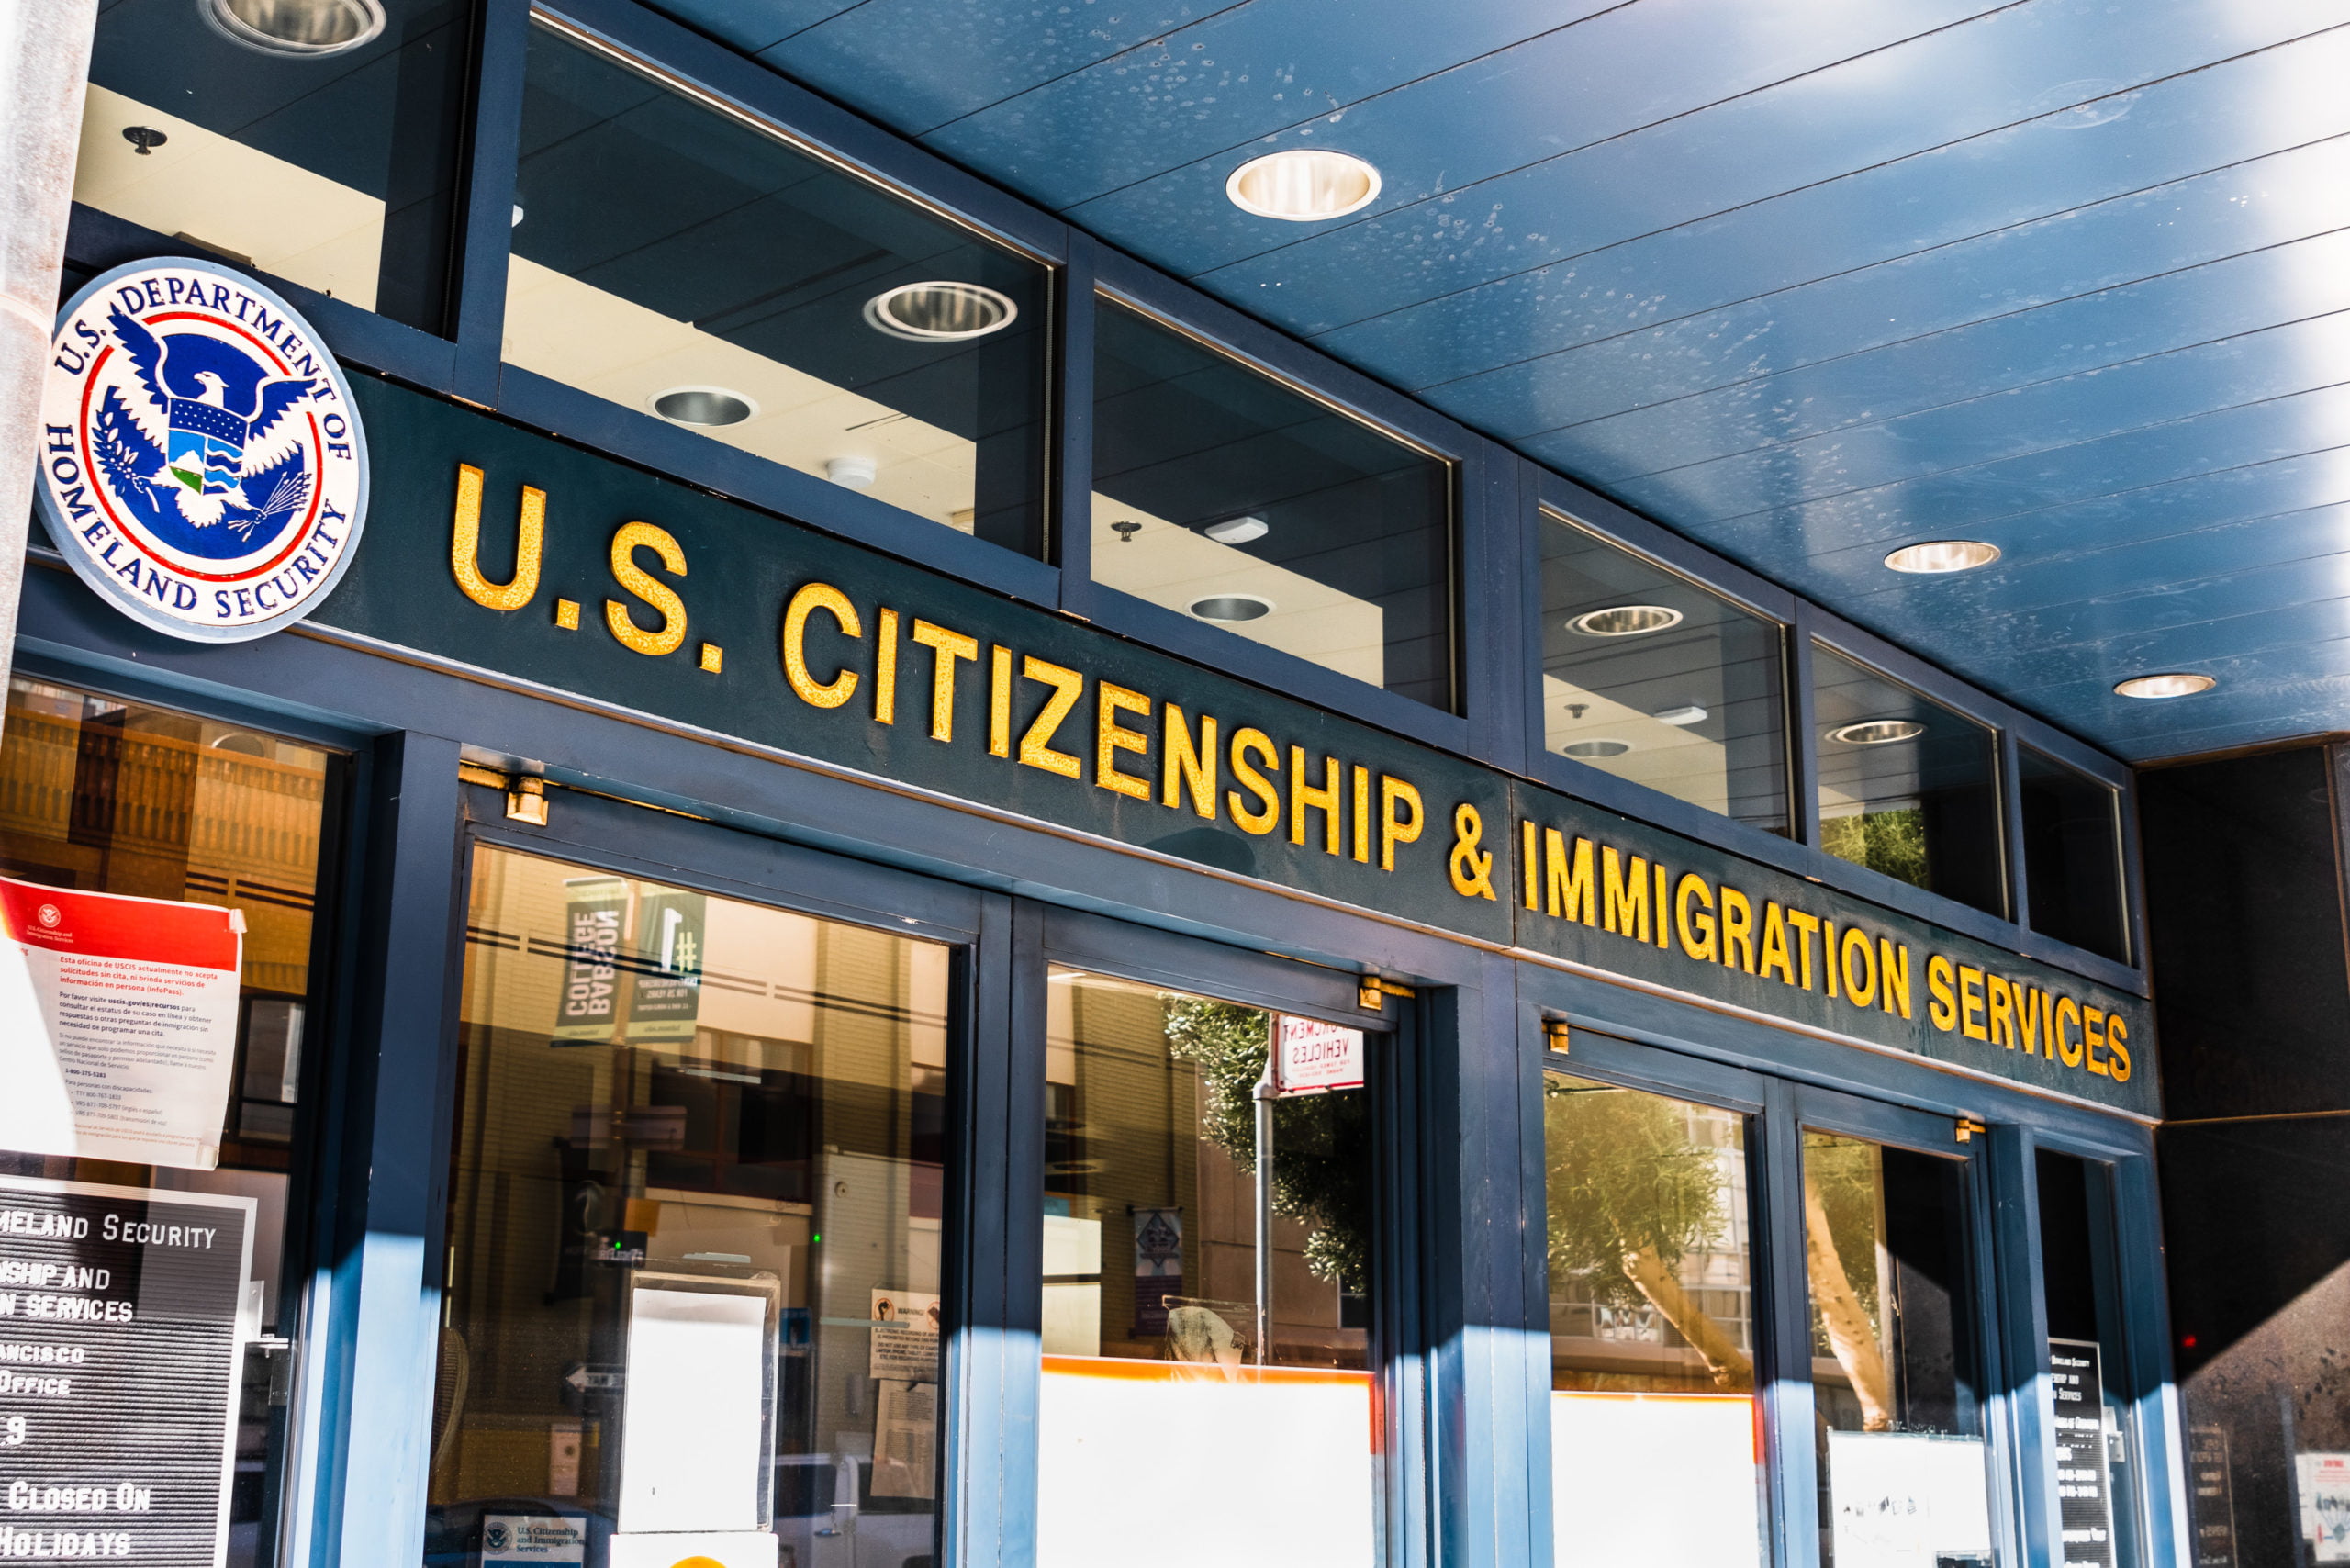 Nếu bạn đã nộp đơn xin bất kỳ loại thị thực Hoa Kỳ nào, thì giai đoạn hồ sơ tại Sở Nhập tịch và Di trú Hoa Kỳ Hoa Kỳ (USCIS) có thể là một thách thức lớn. Cơ quan liên bang này trong nhiều năm đã phải vật lộn với một lượng lớn hồ sơ xin thị thực tồn đọng, ngày càng trở nên tồi tệ hơn bởi việc đóng cửa văn phòng và tình trạng thiếu nhân sự trong thời kỳ đại dịch. Theo một bản ghi nhớ mới do Văn phòng Sở Nhập tịch và Di trú (CIS) Ombudsman công bố, USCIS đang làm việc để hoàn thành khoảng 4.400 vai trò trong toàn cơ quan, bao gồm cả các vị trí tuyển dụng tại các Trung tâm Liên hệ của USCIS. Bản ghi nhớ cũng nêu ra những cách tốt nhất để liên hệ với USCIS khi có các câu hỏi về nhập cư.